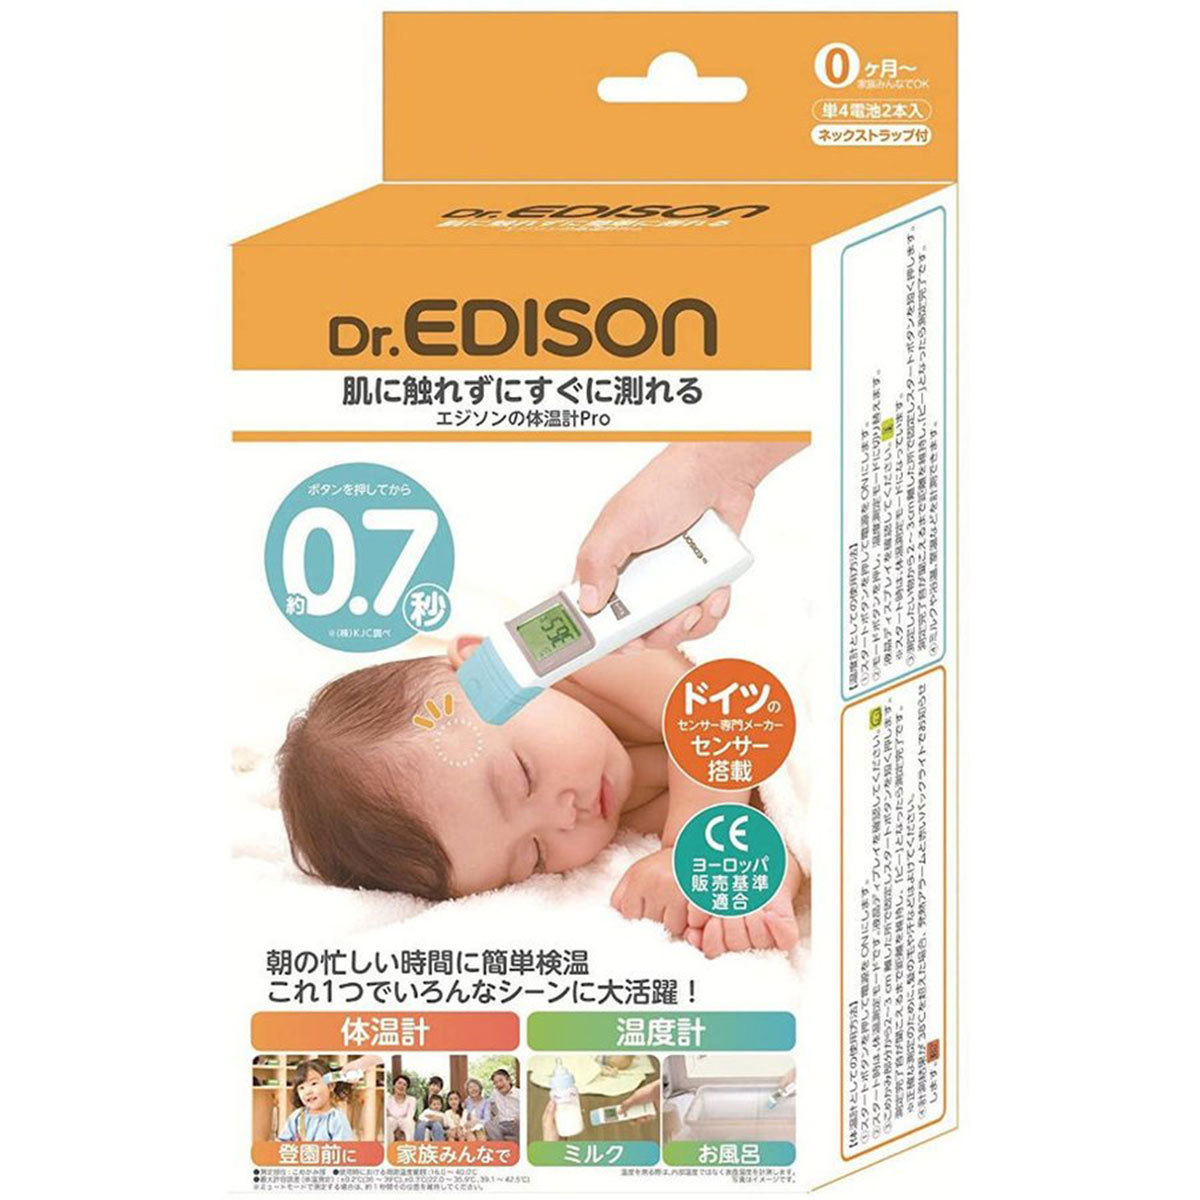 エジソンの体温計Pro 赤ちゃん 体温計の商品画像